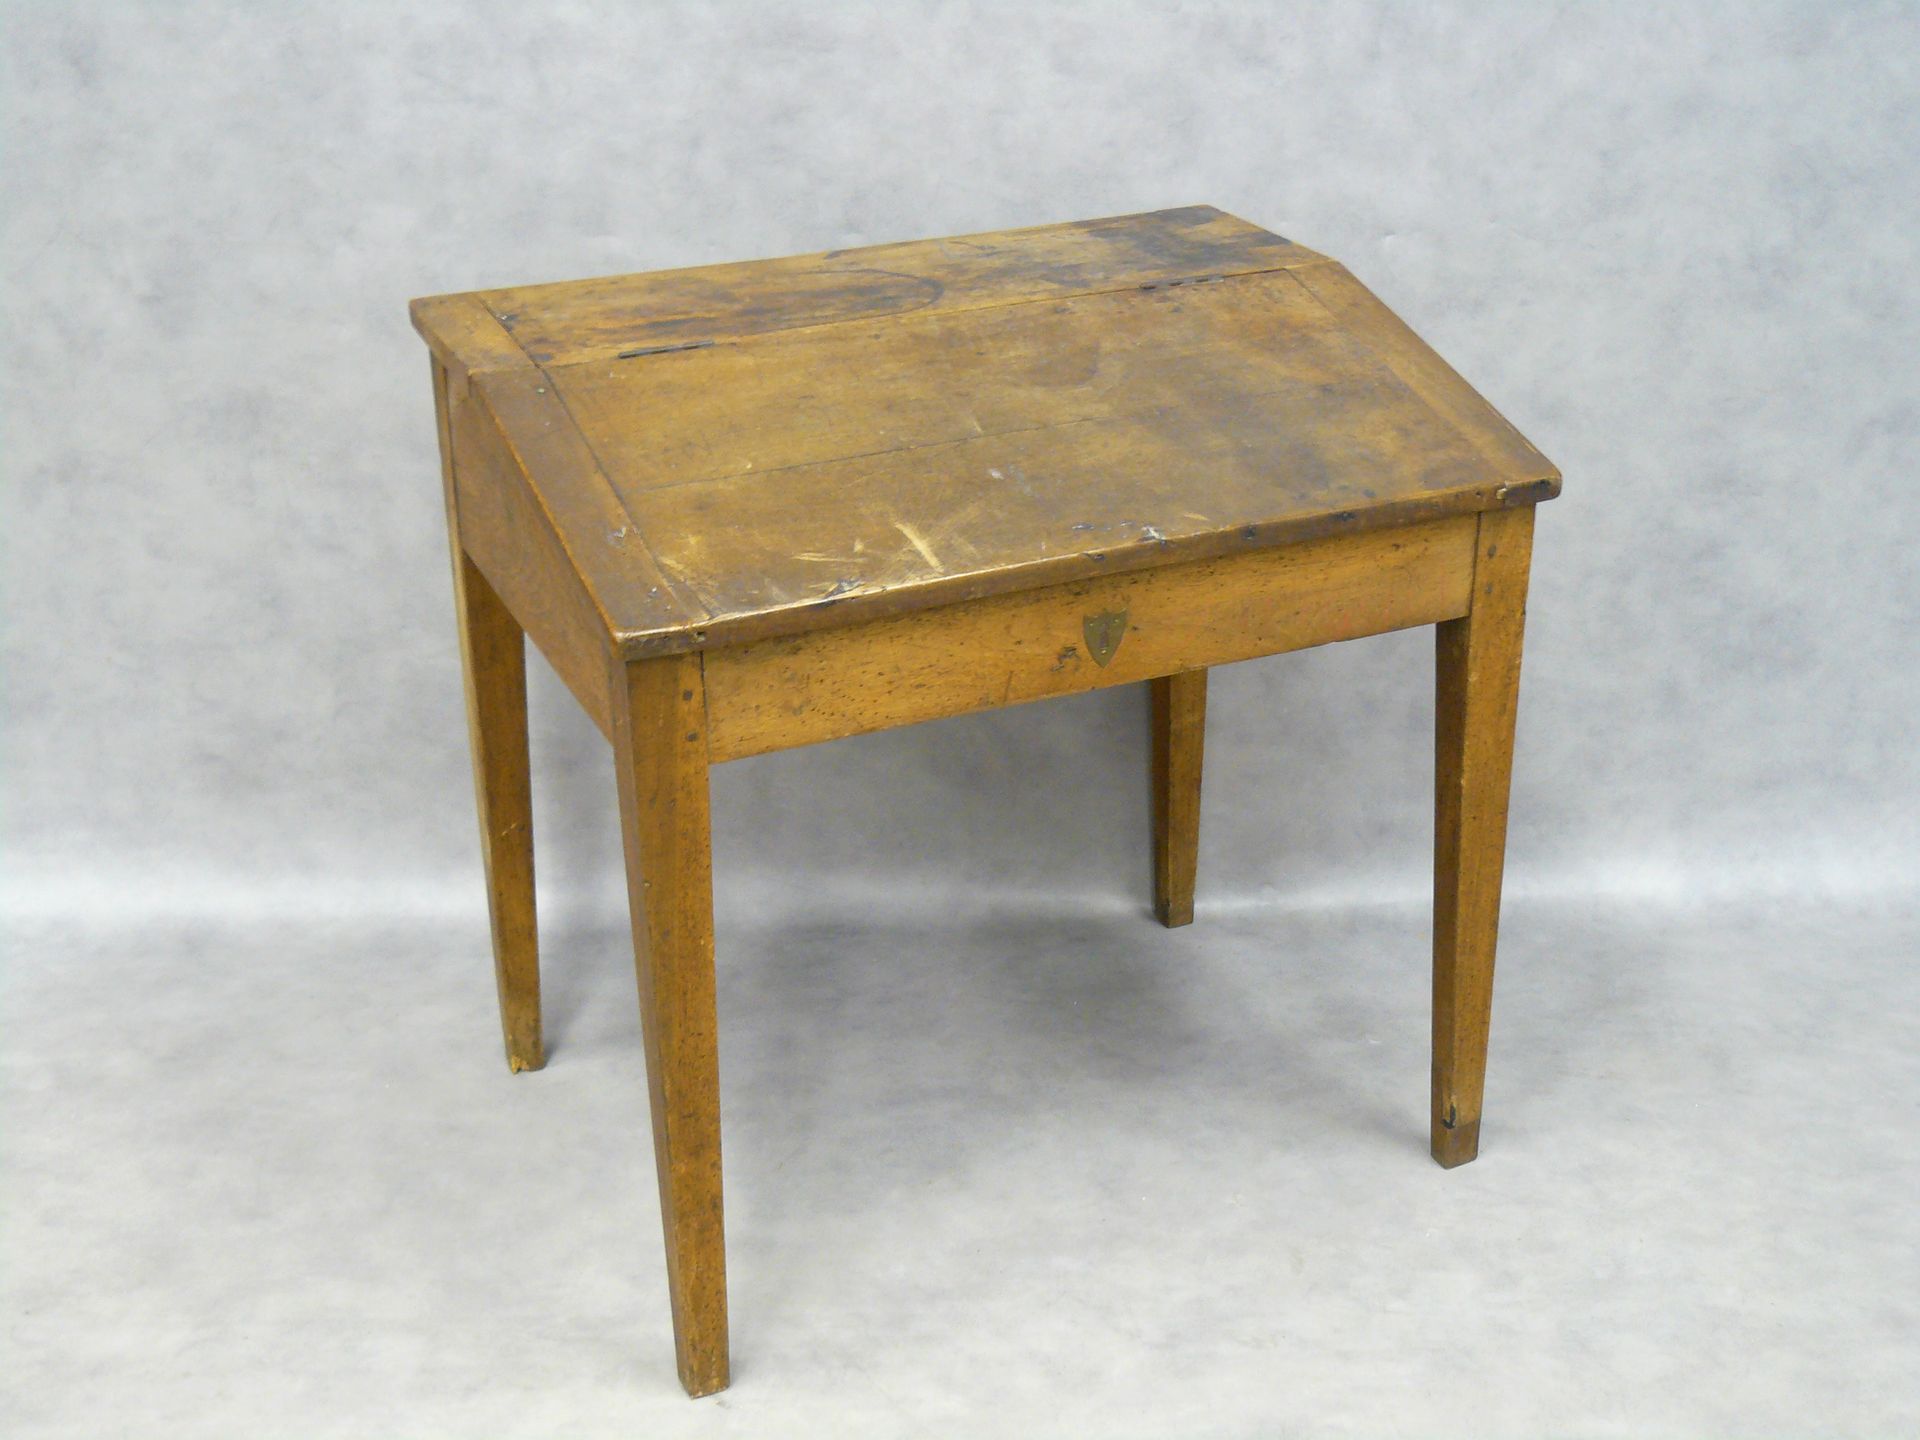 Null ein schräger Schultisch, Nussbaum - 81 x 82 - 61 cm